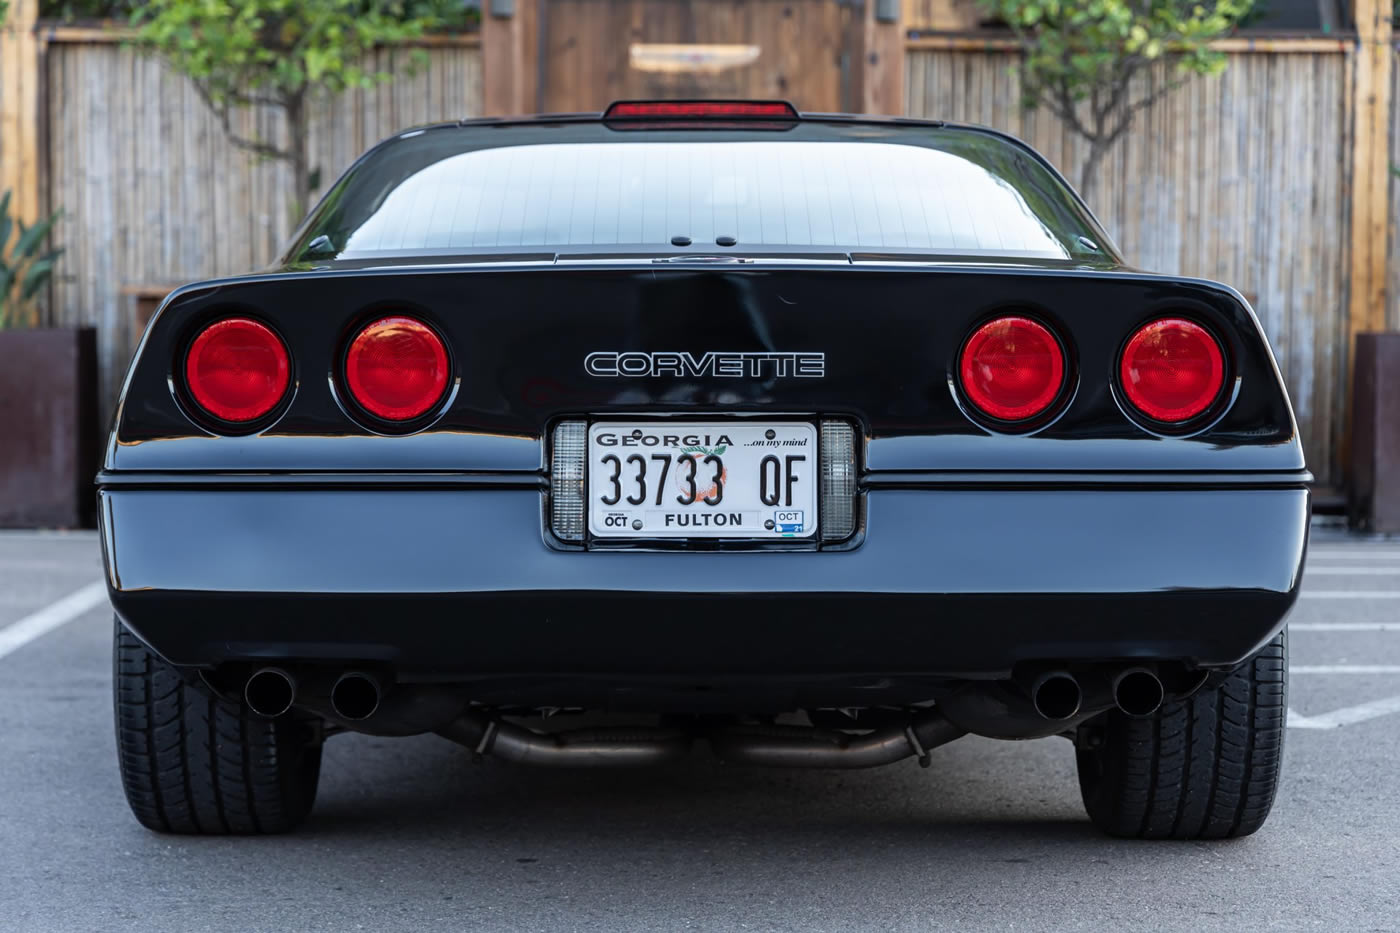 1987 Corvette Coupe in Black